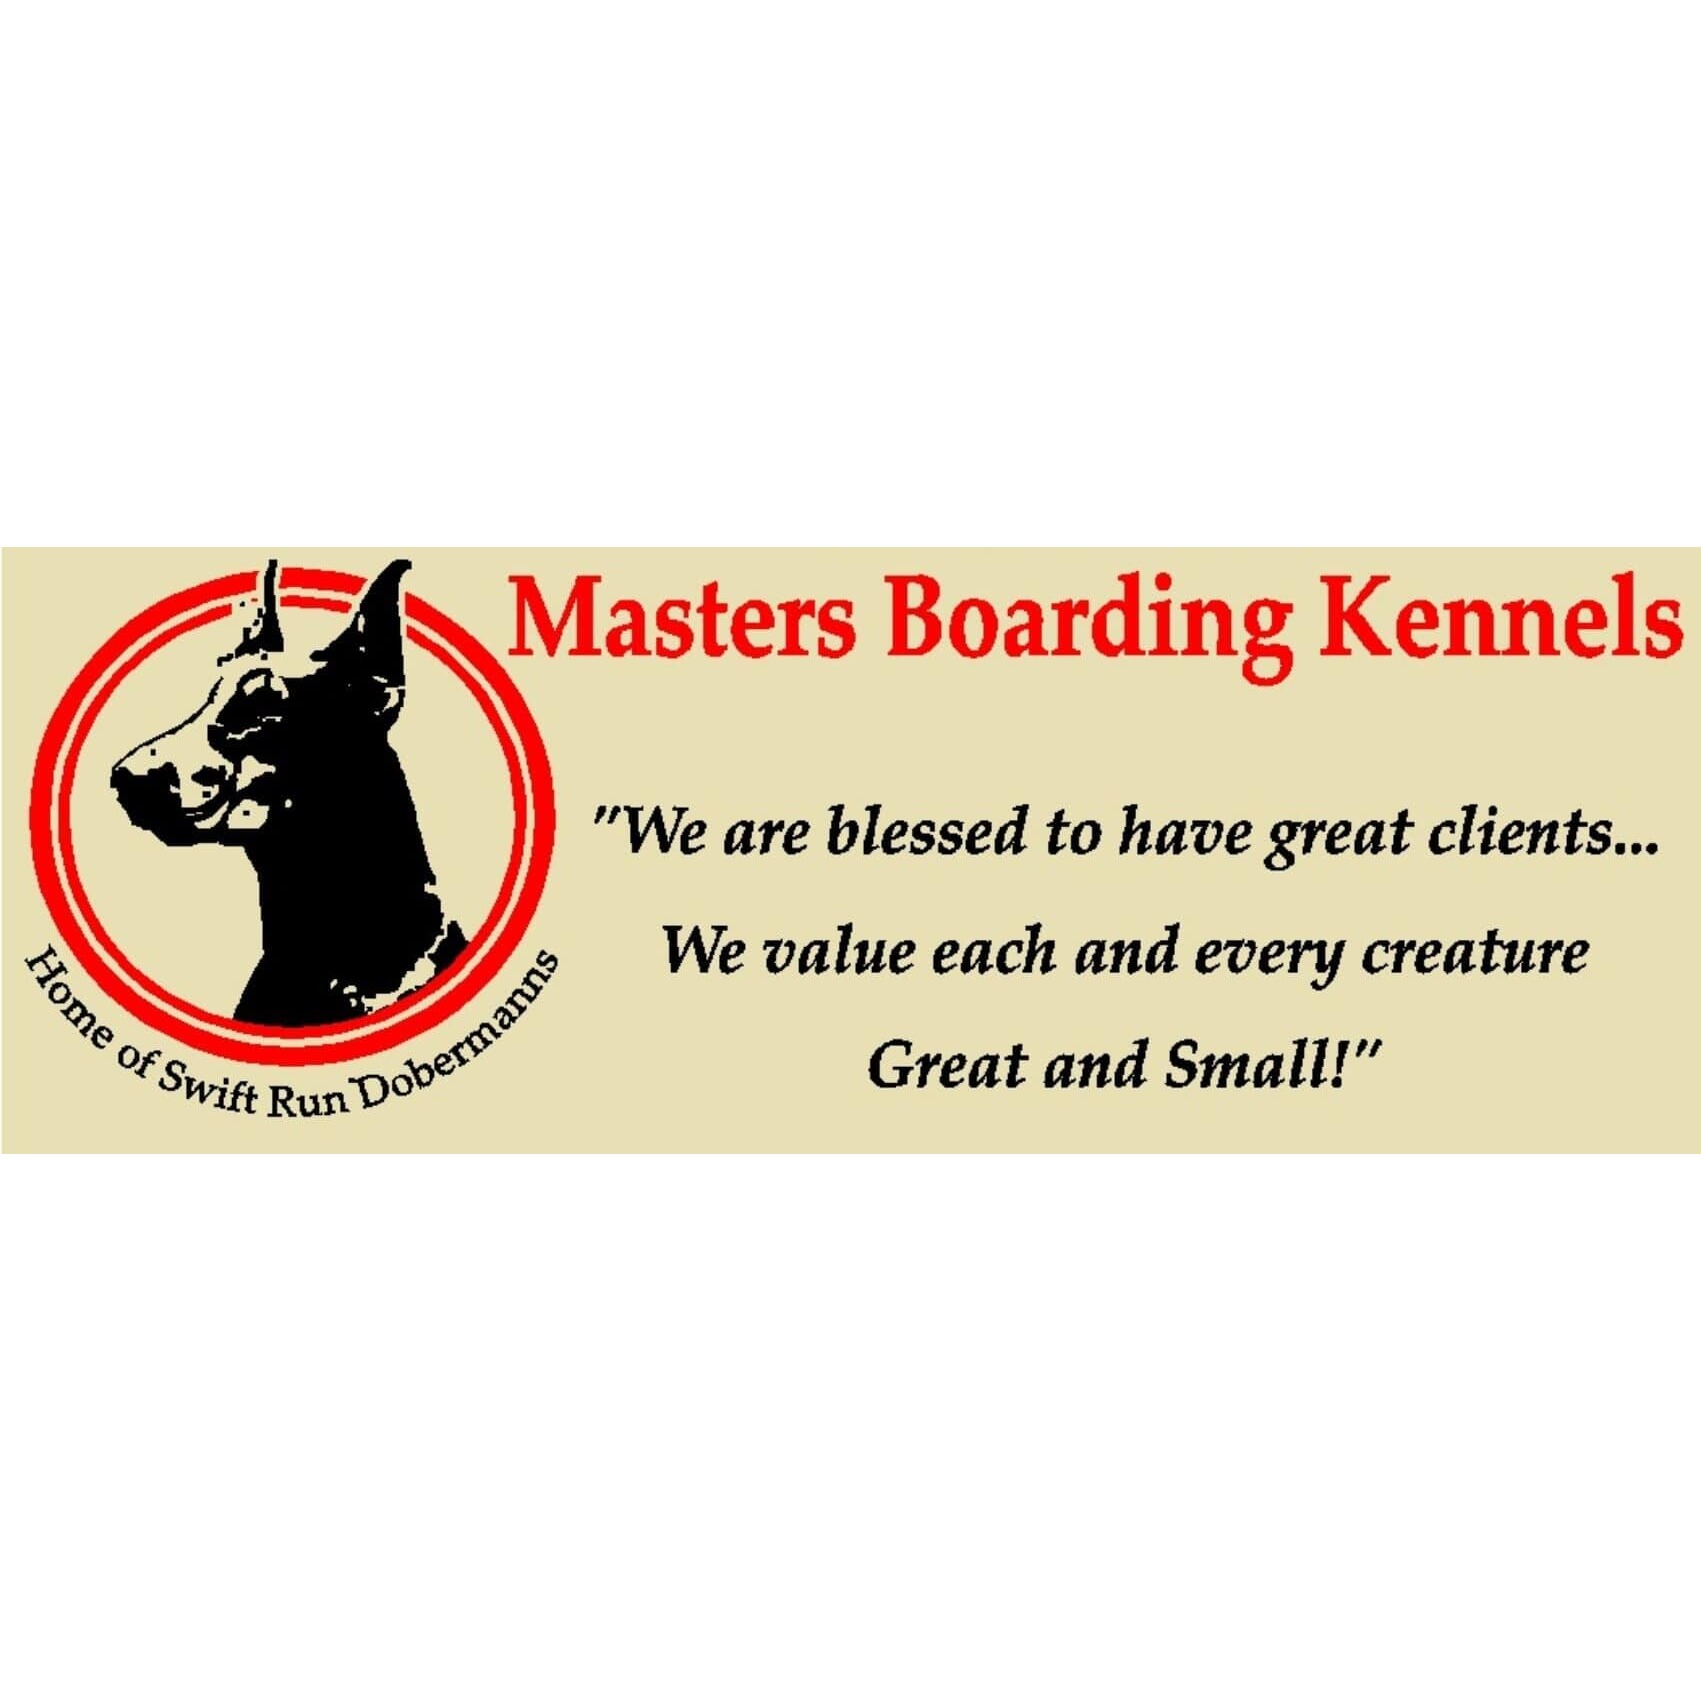 Masters Boarding Kennels